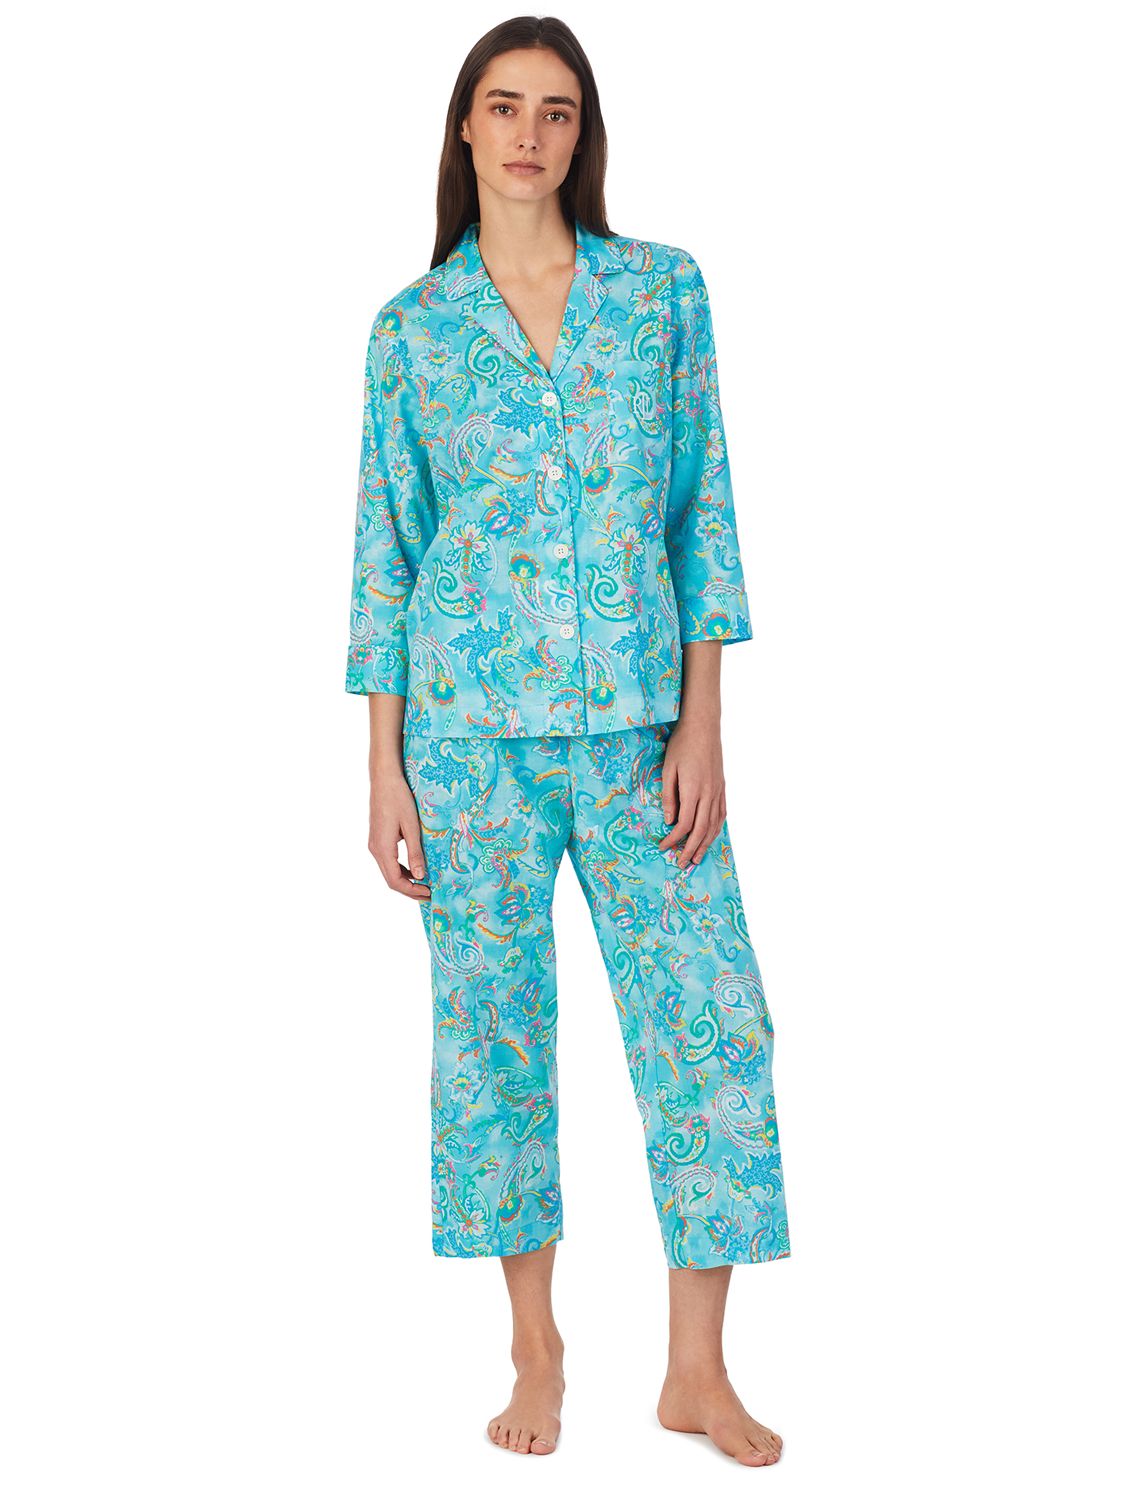 Lauren Ralph Lauren 3/4 Sleeve Floral Print Pyjamas, Turquoise/Multi